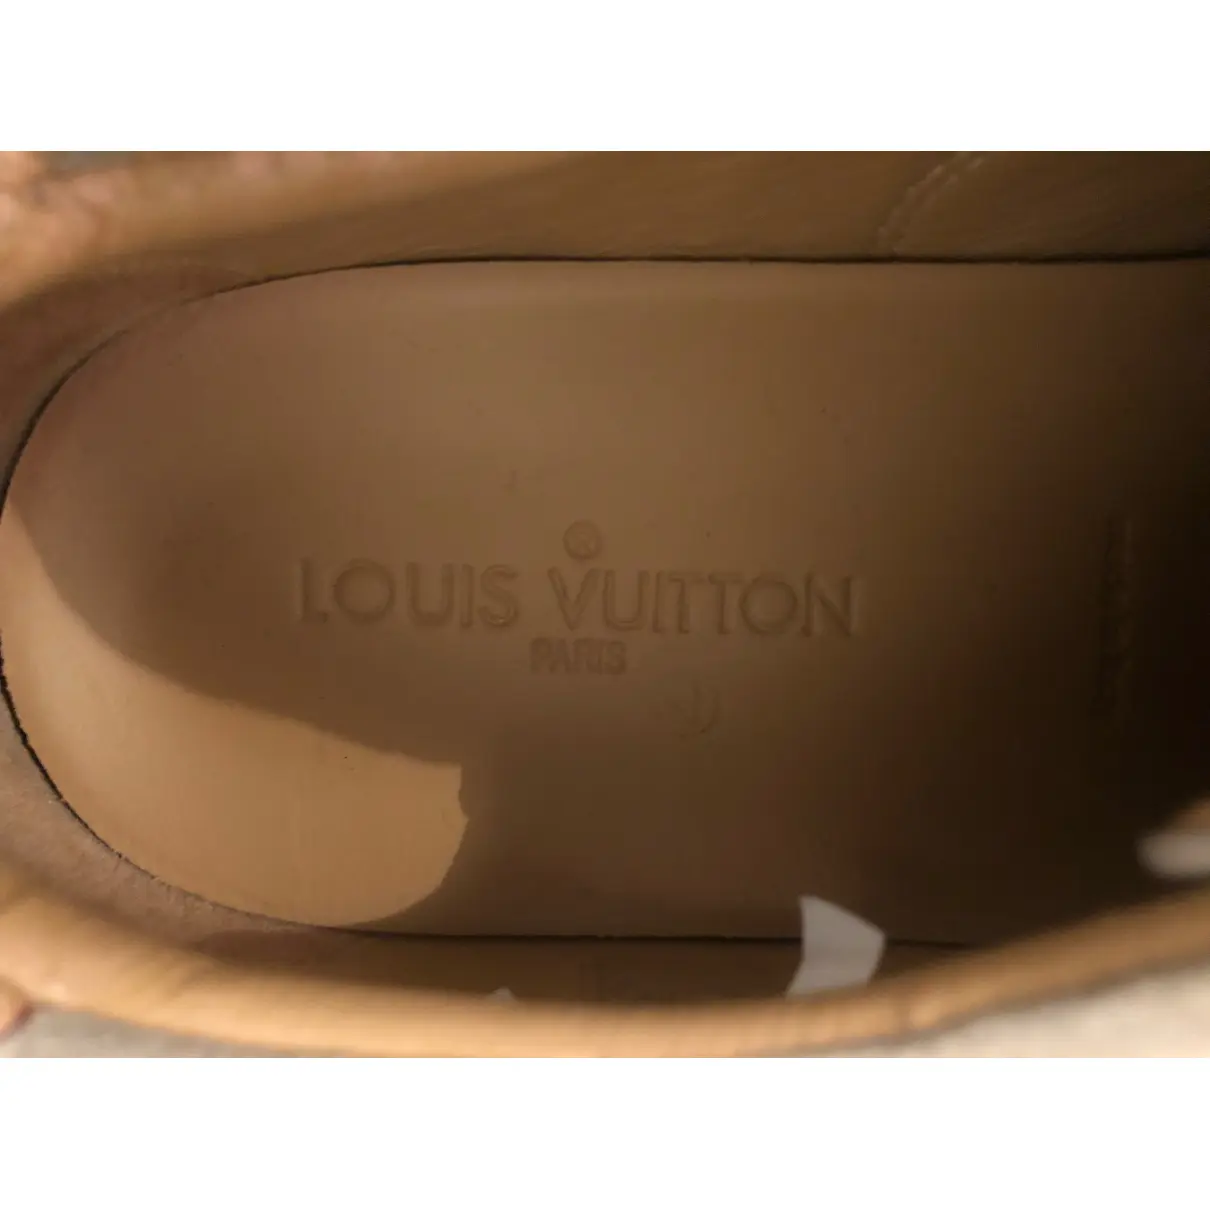 Espadrilles Louis Vuitton